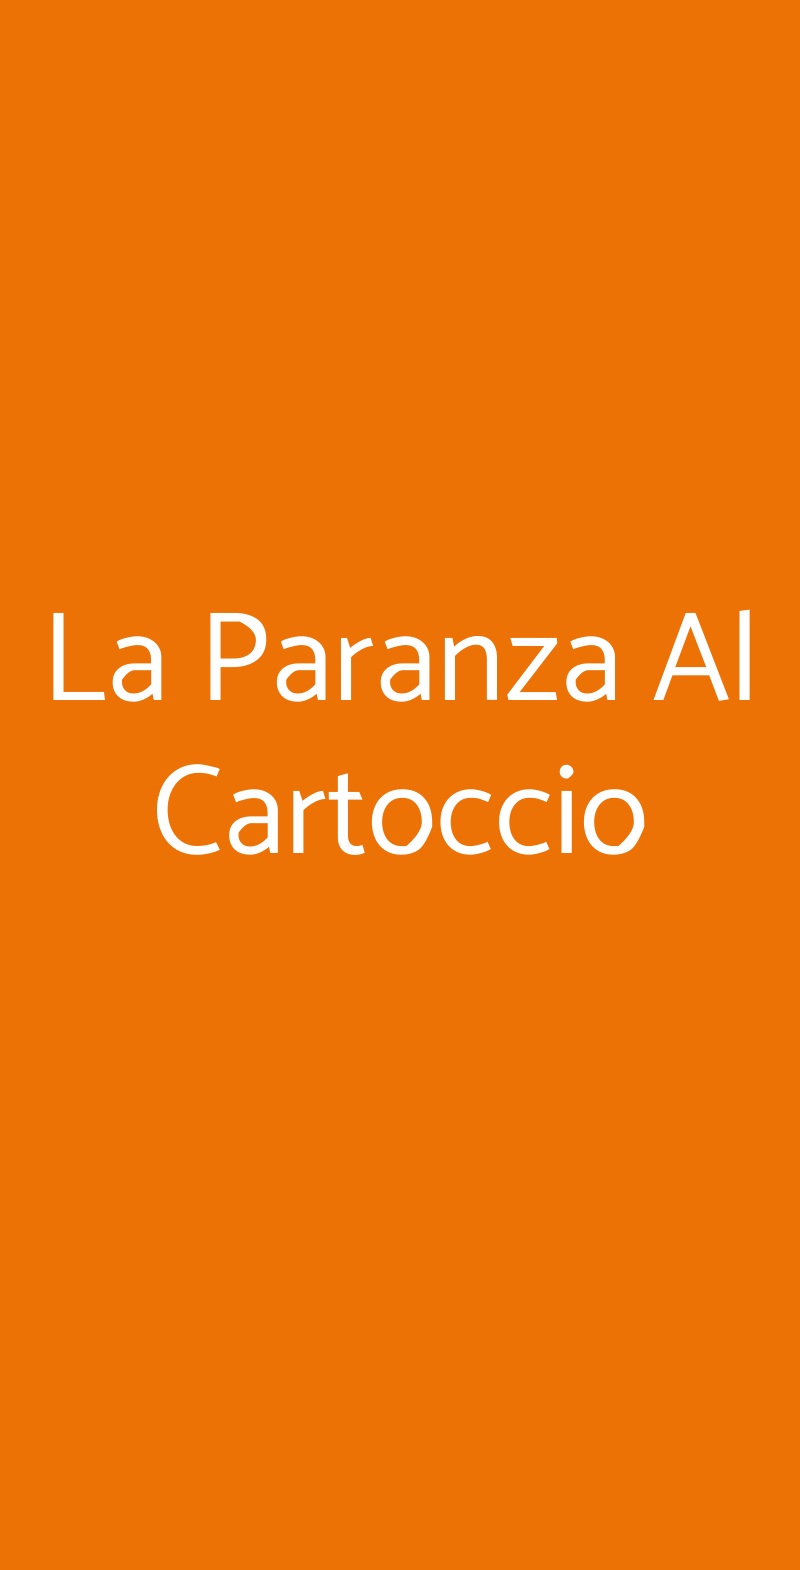 La Paranza Al Cartoccio Fiumicino menù 1 pagina